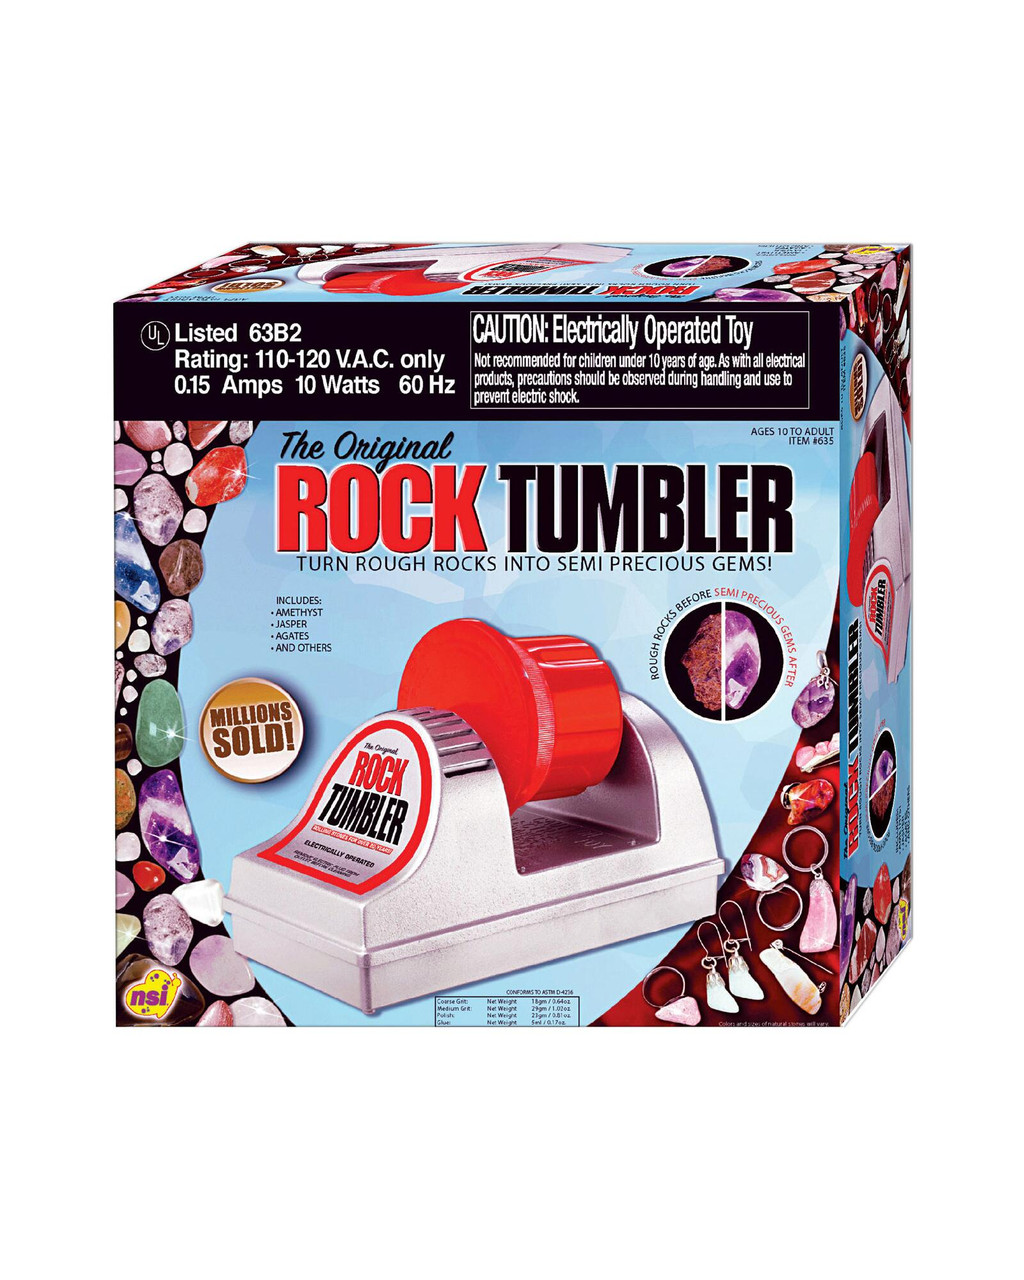 ROCK TUMBLER Smoothing & Shining Rocks Toy Review 